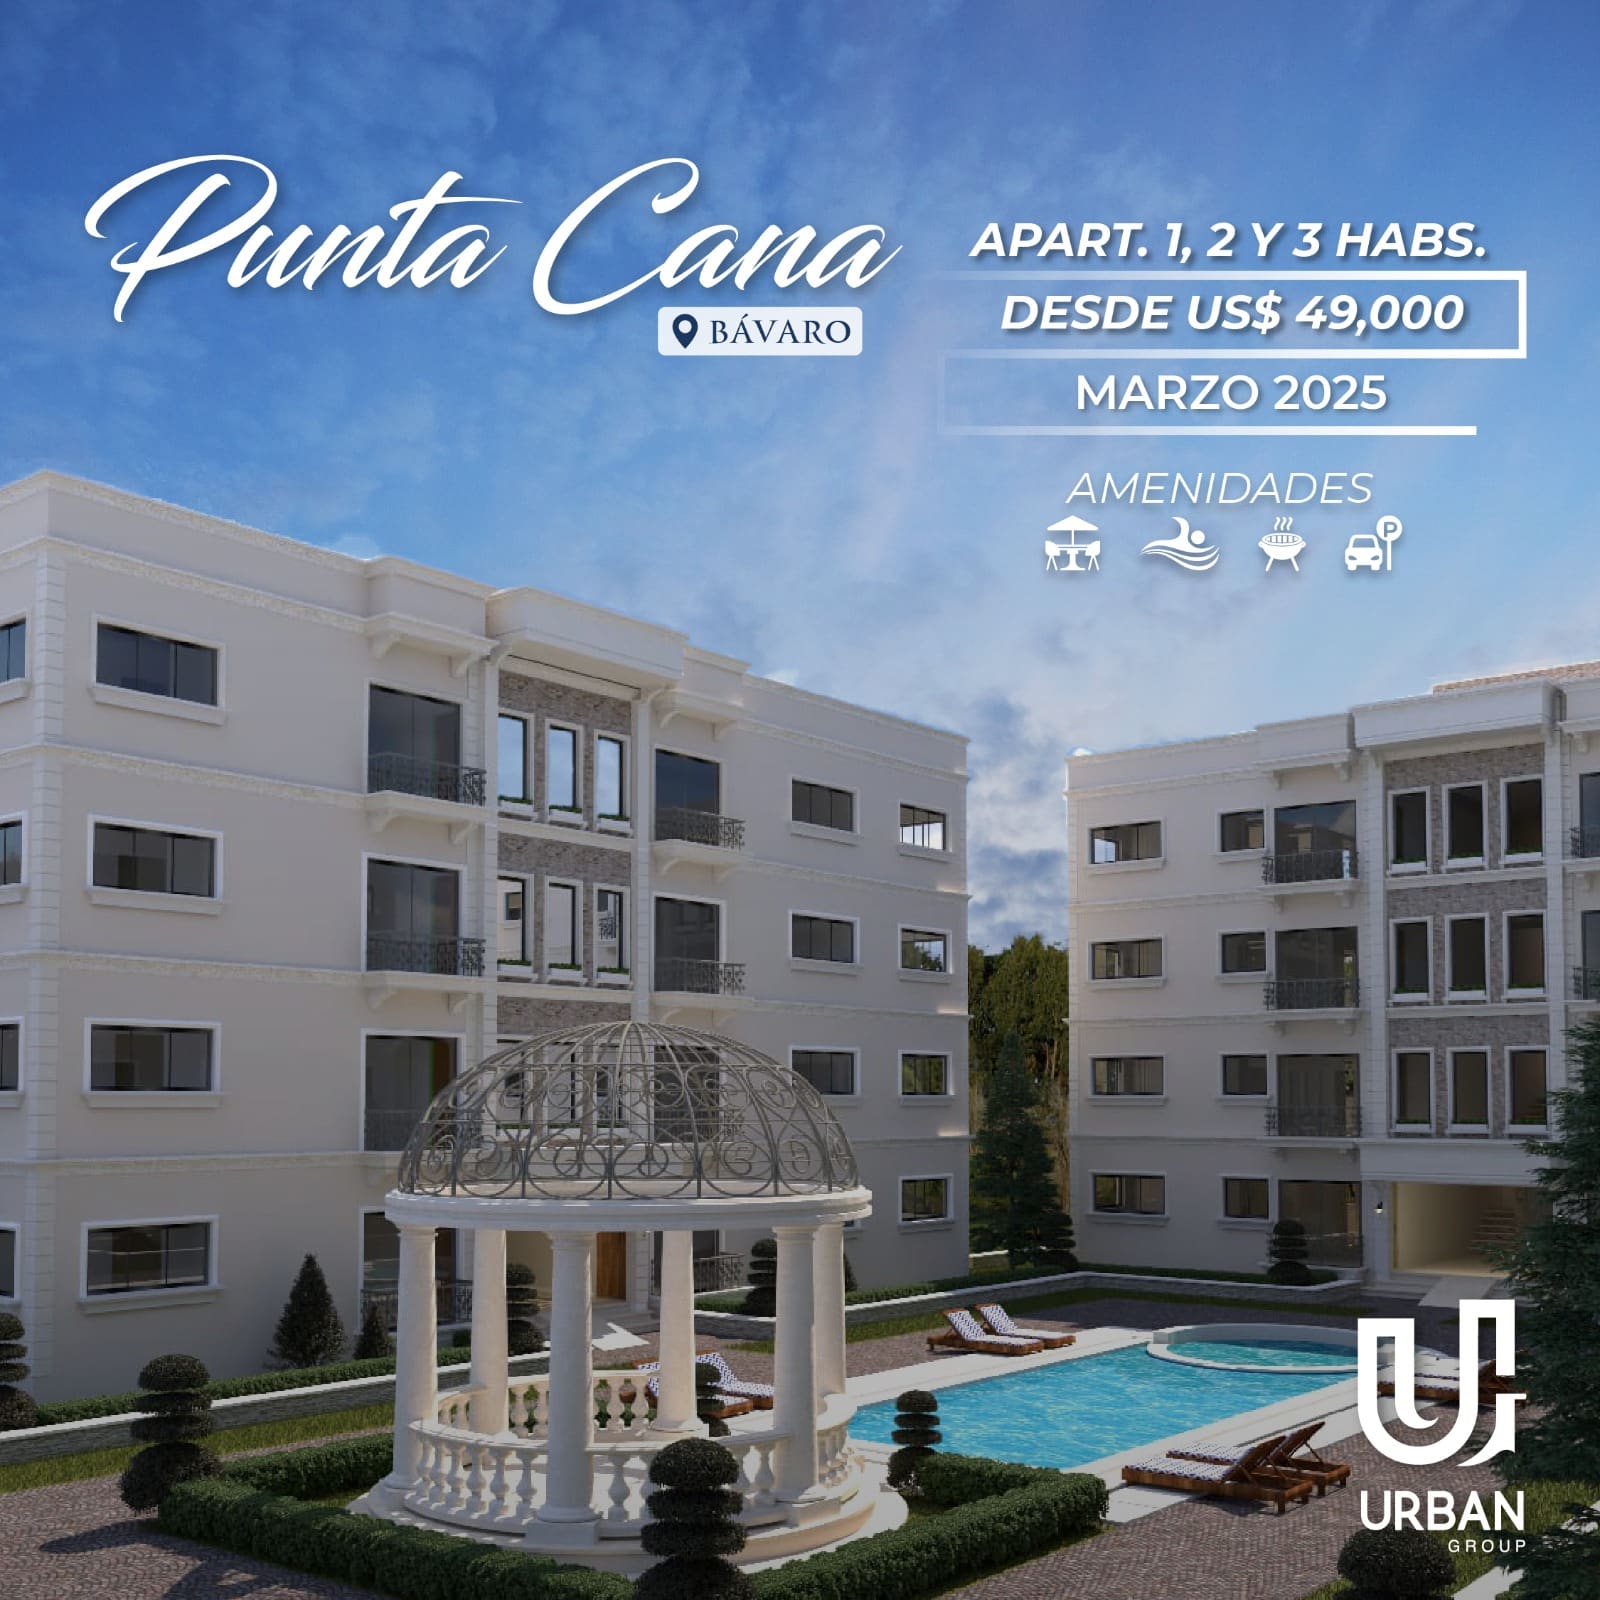 Apartamentos de 1, 2 & 3 Habitaciones Desde US$49,000 en Punta Cana